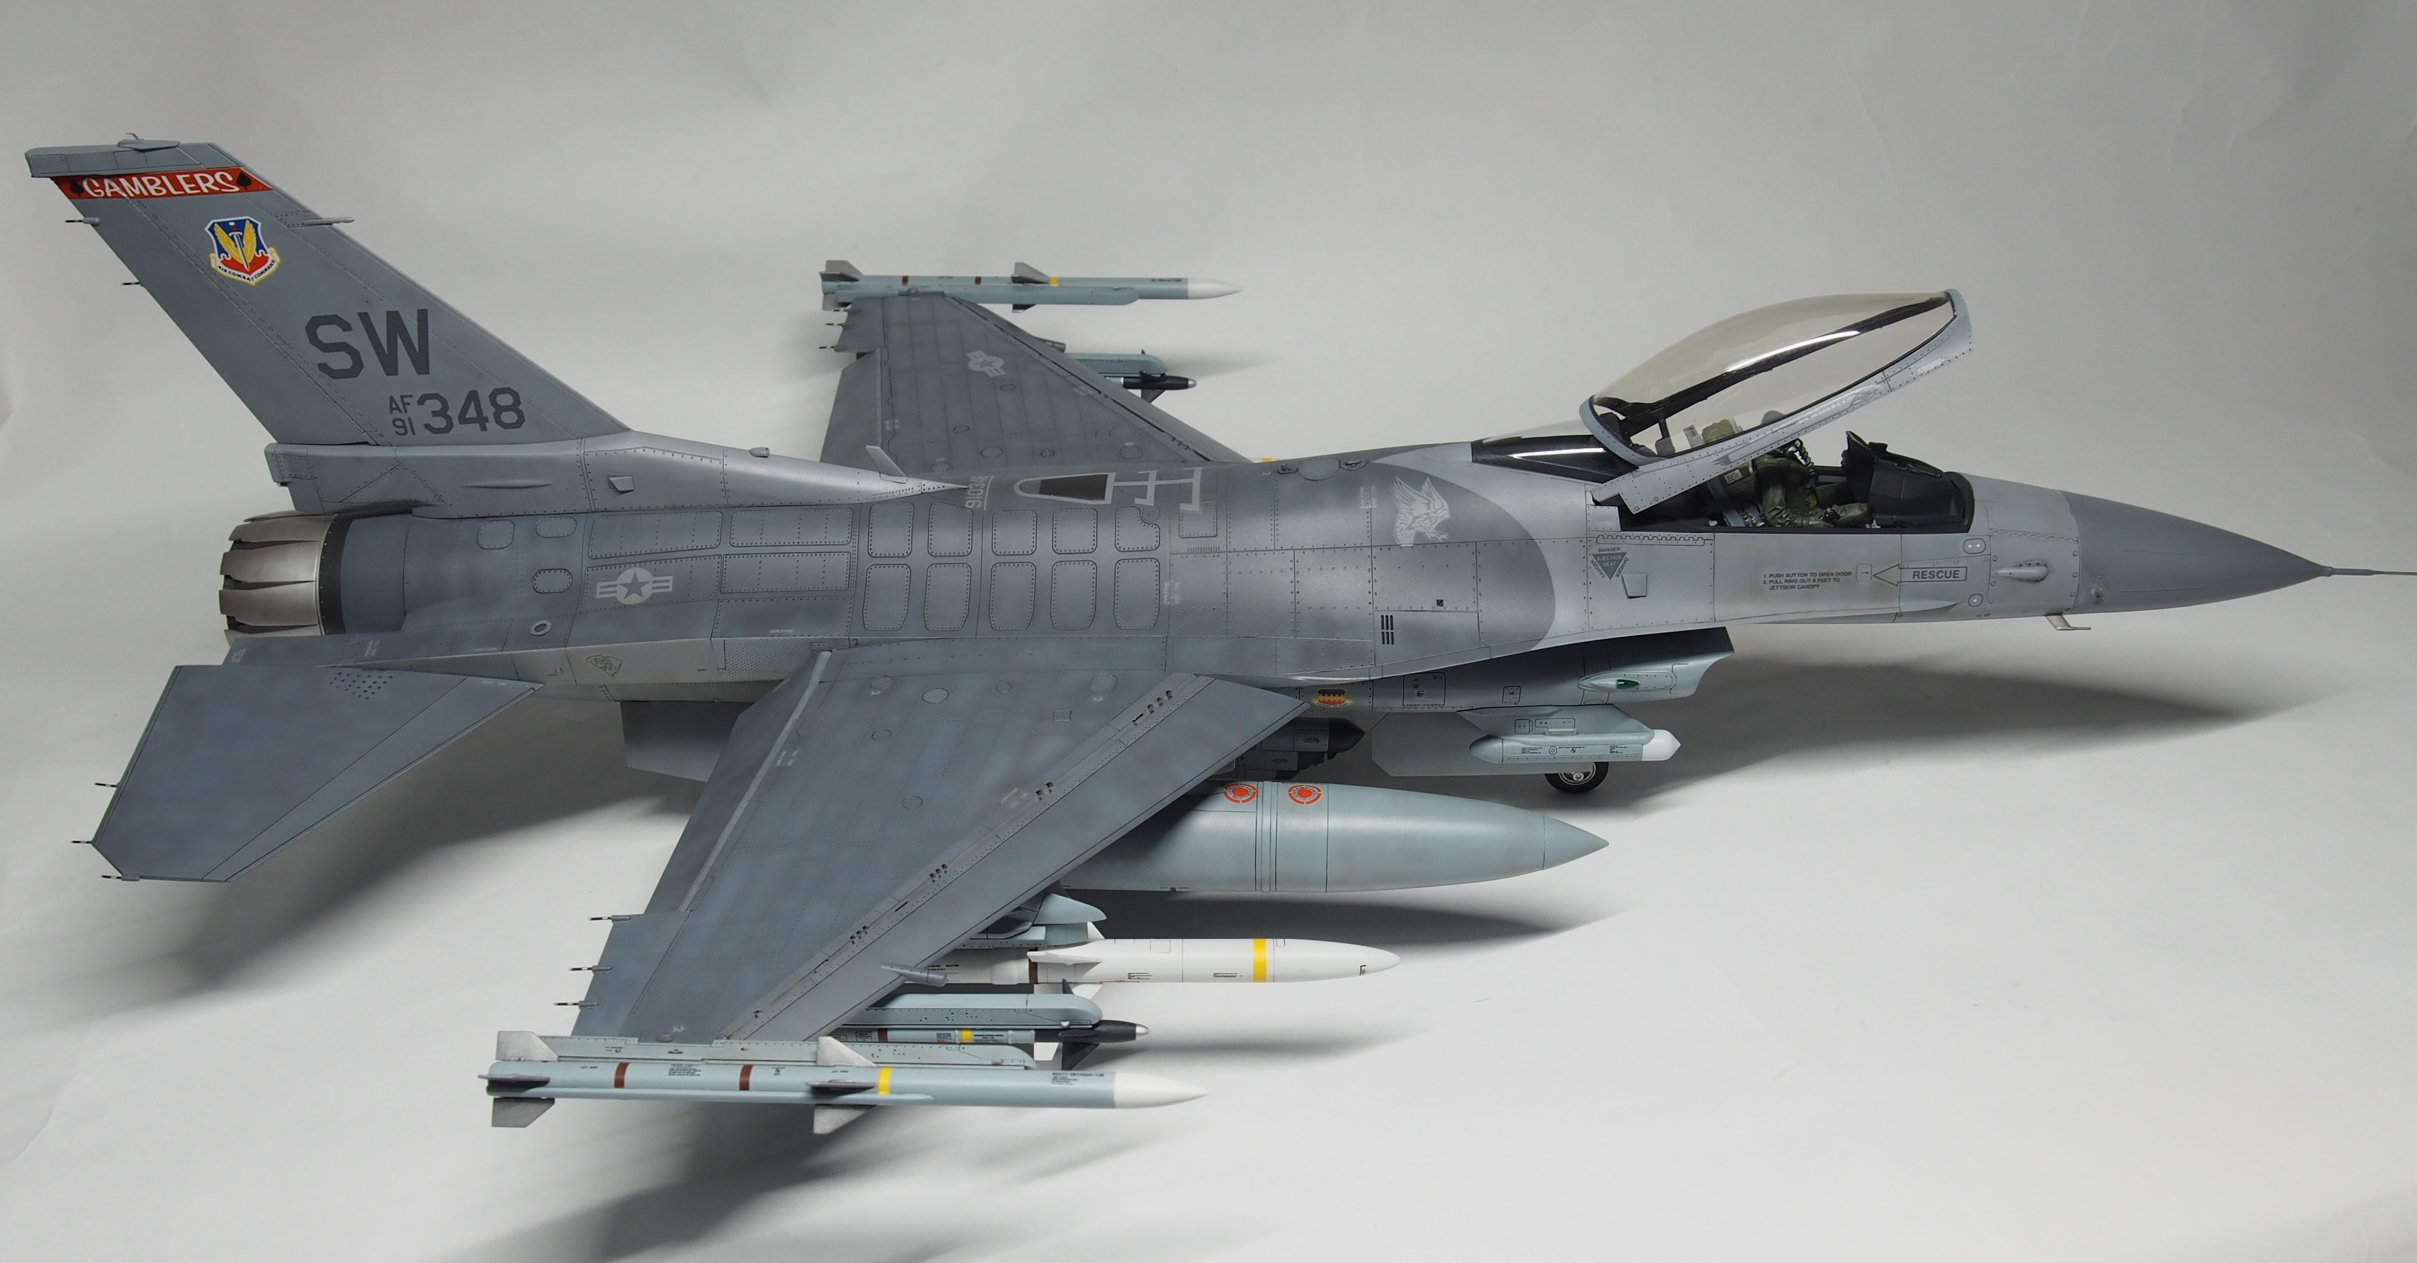 タミヤ 1/32 F-16CJ | JUNSANのミニチュア航空博物館